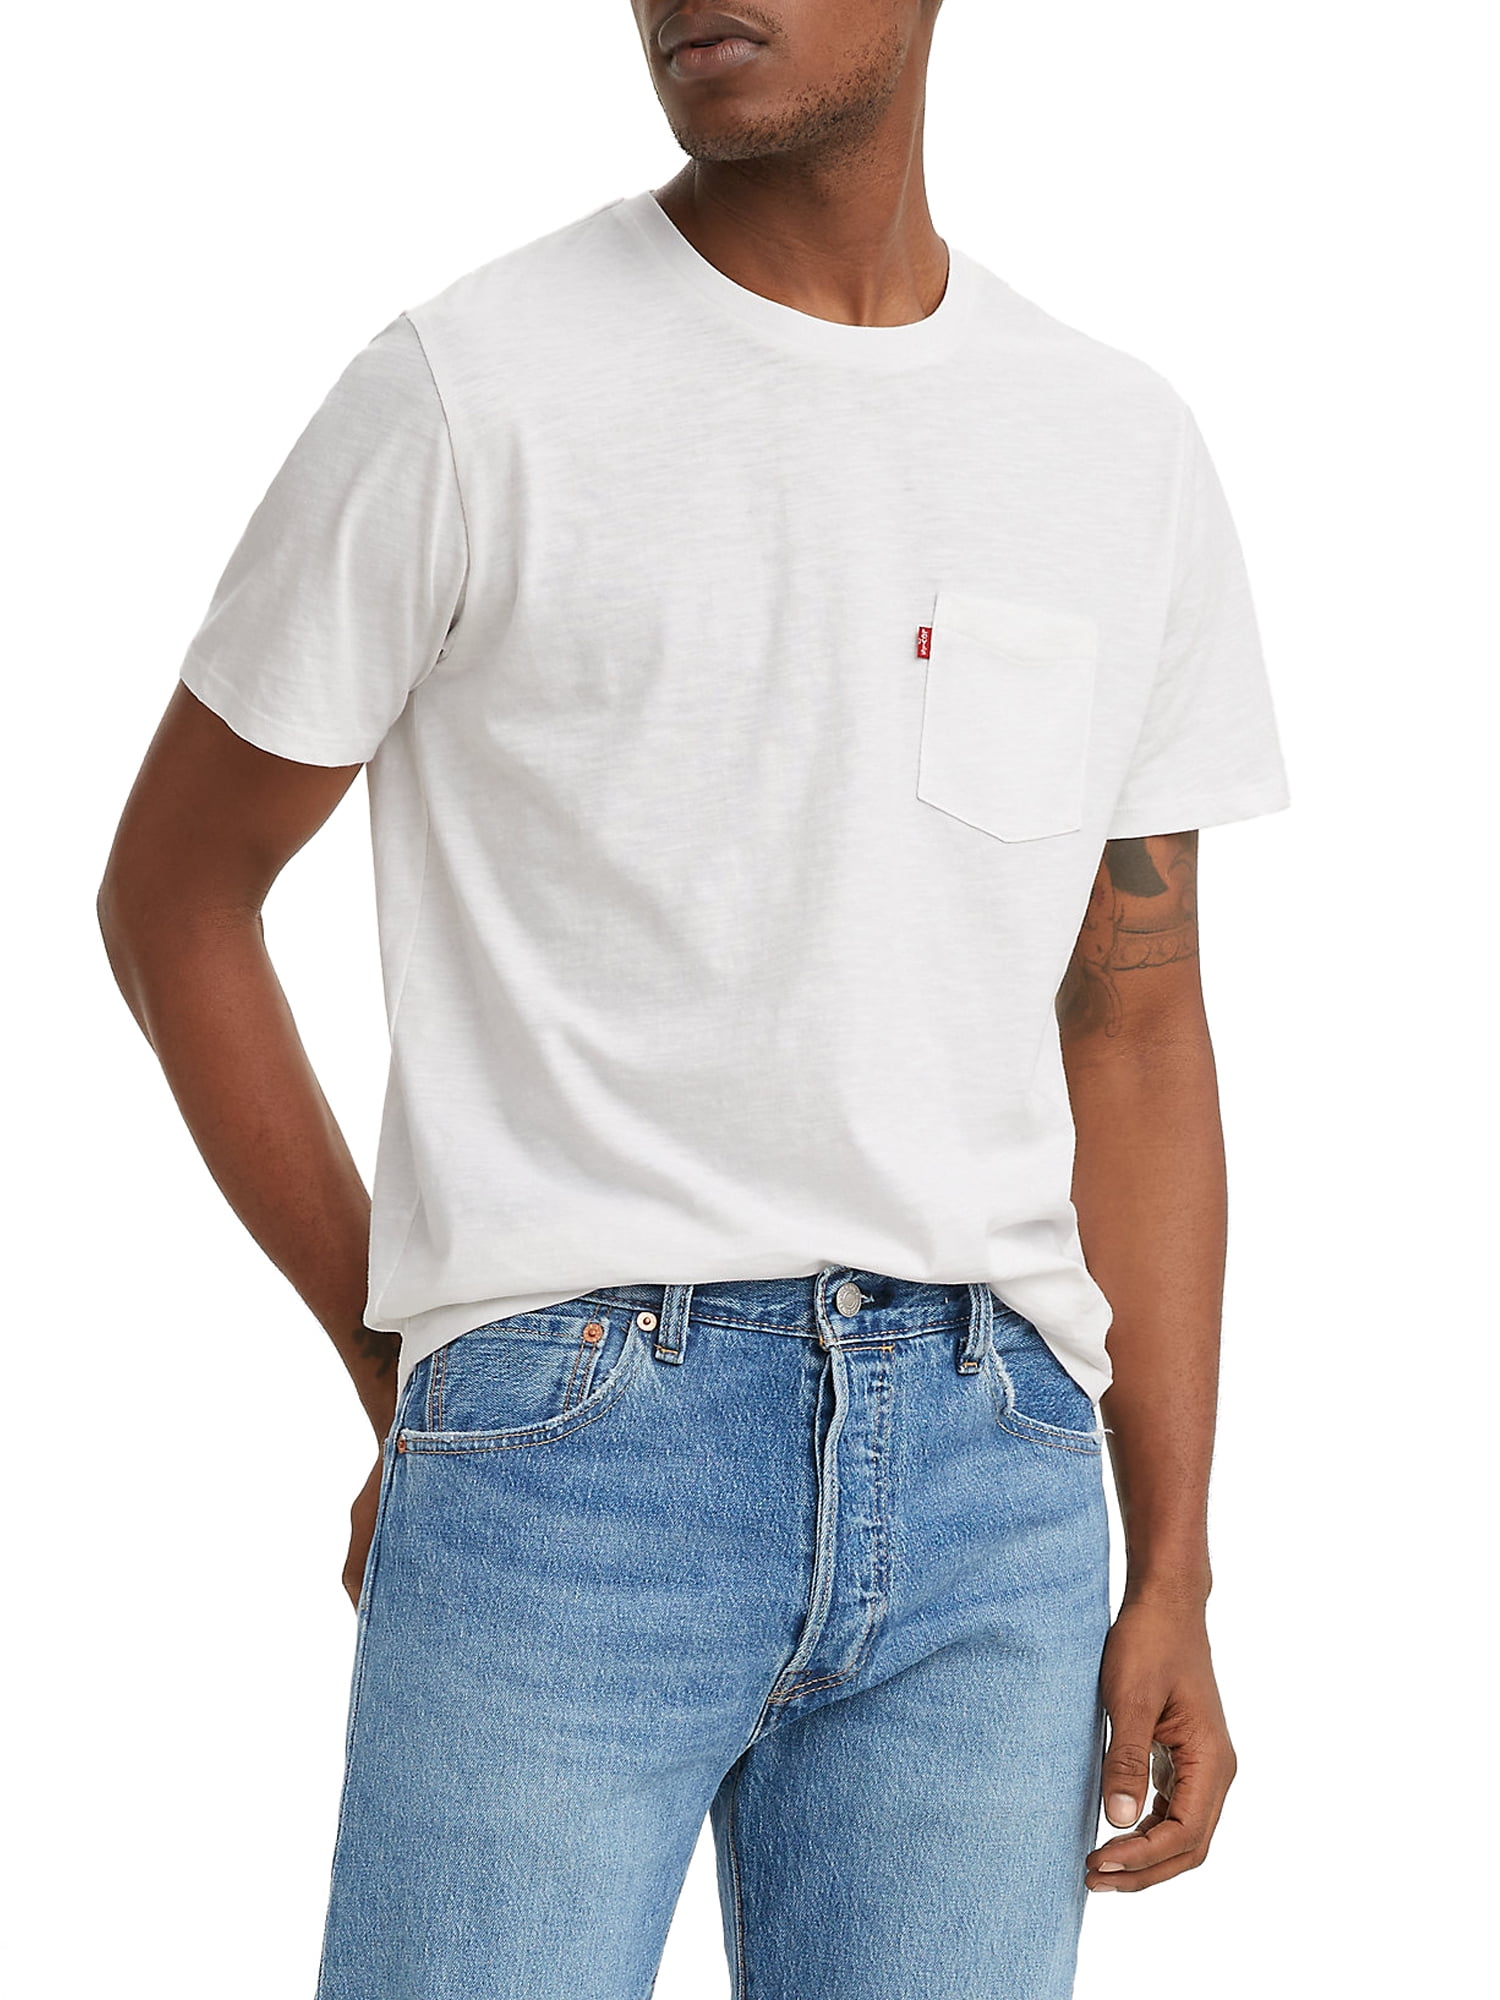 Alternativt forslag Afslut Zoom ind Levi's Men's Classic Pocket T-Shirt - Walmart.com